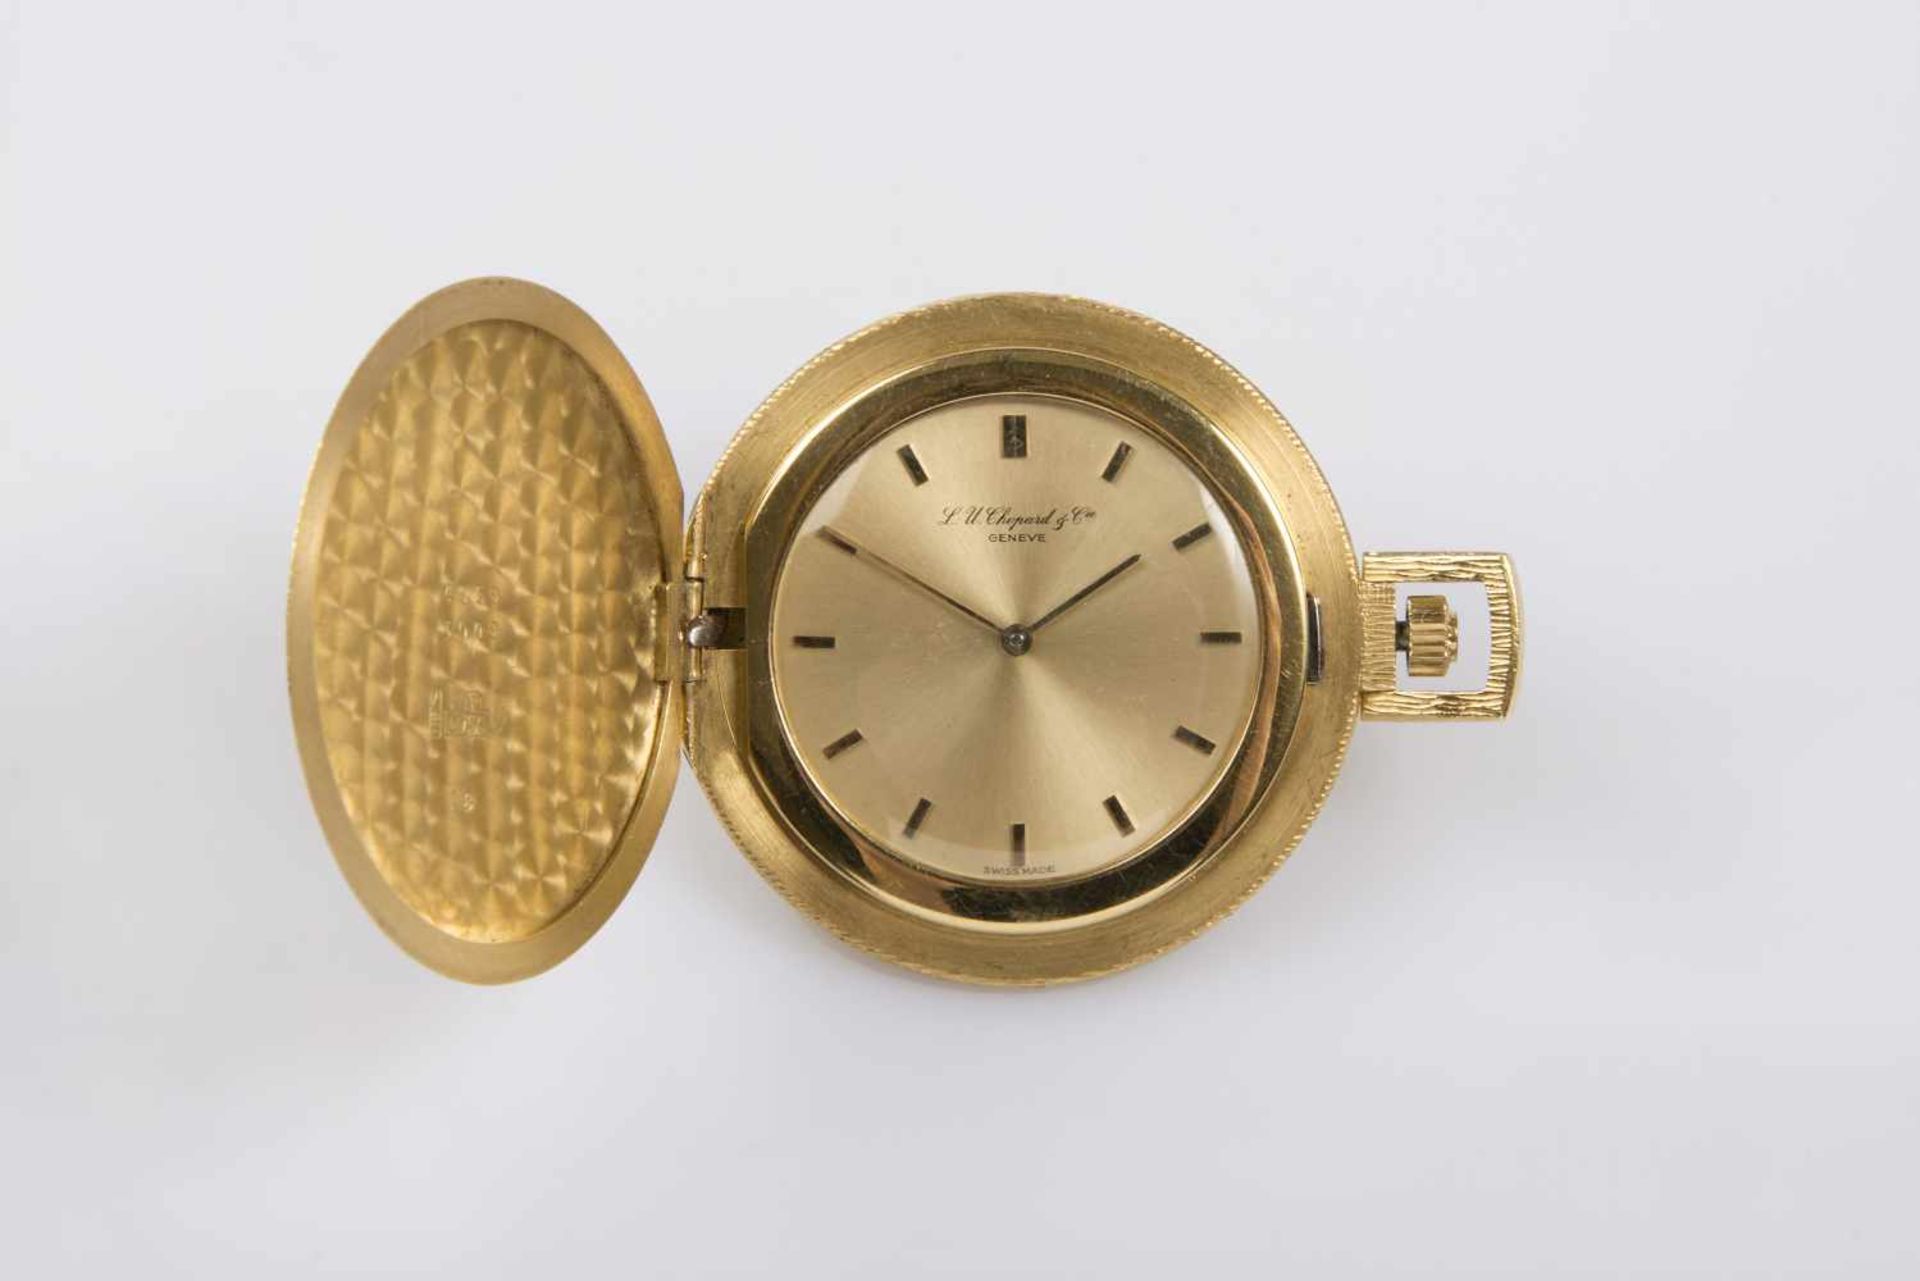 Chopard FrackuhrGold 750, goldfarbiges Zifferblatt, Durchmesser 42 mm, 42,5 g, keine Garantie auf